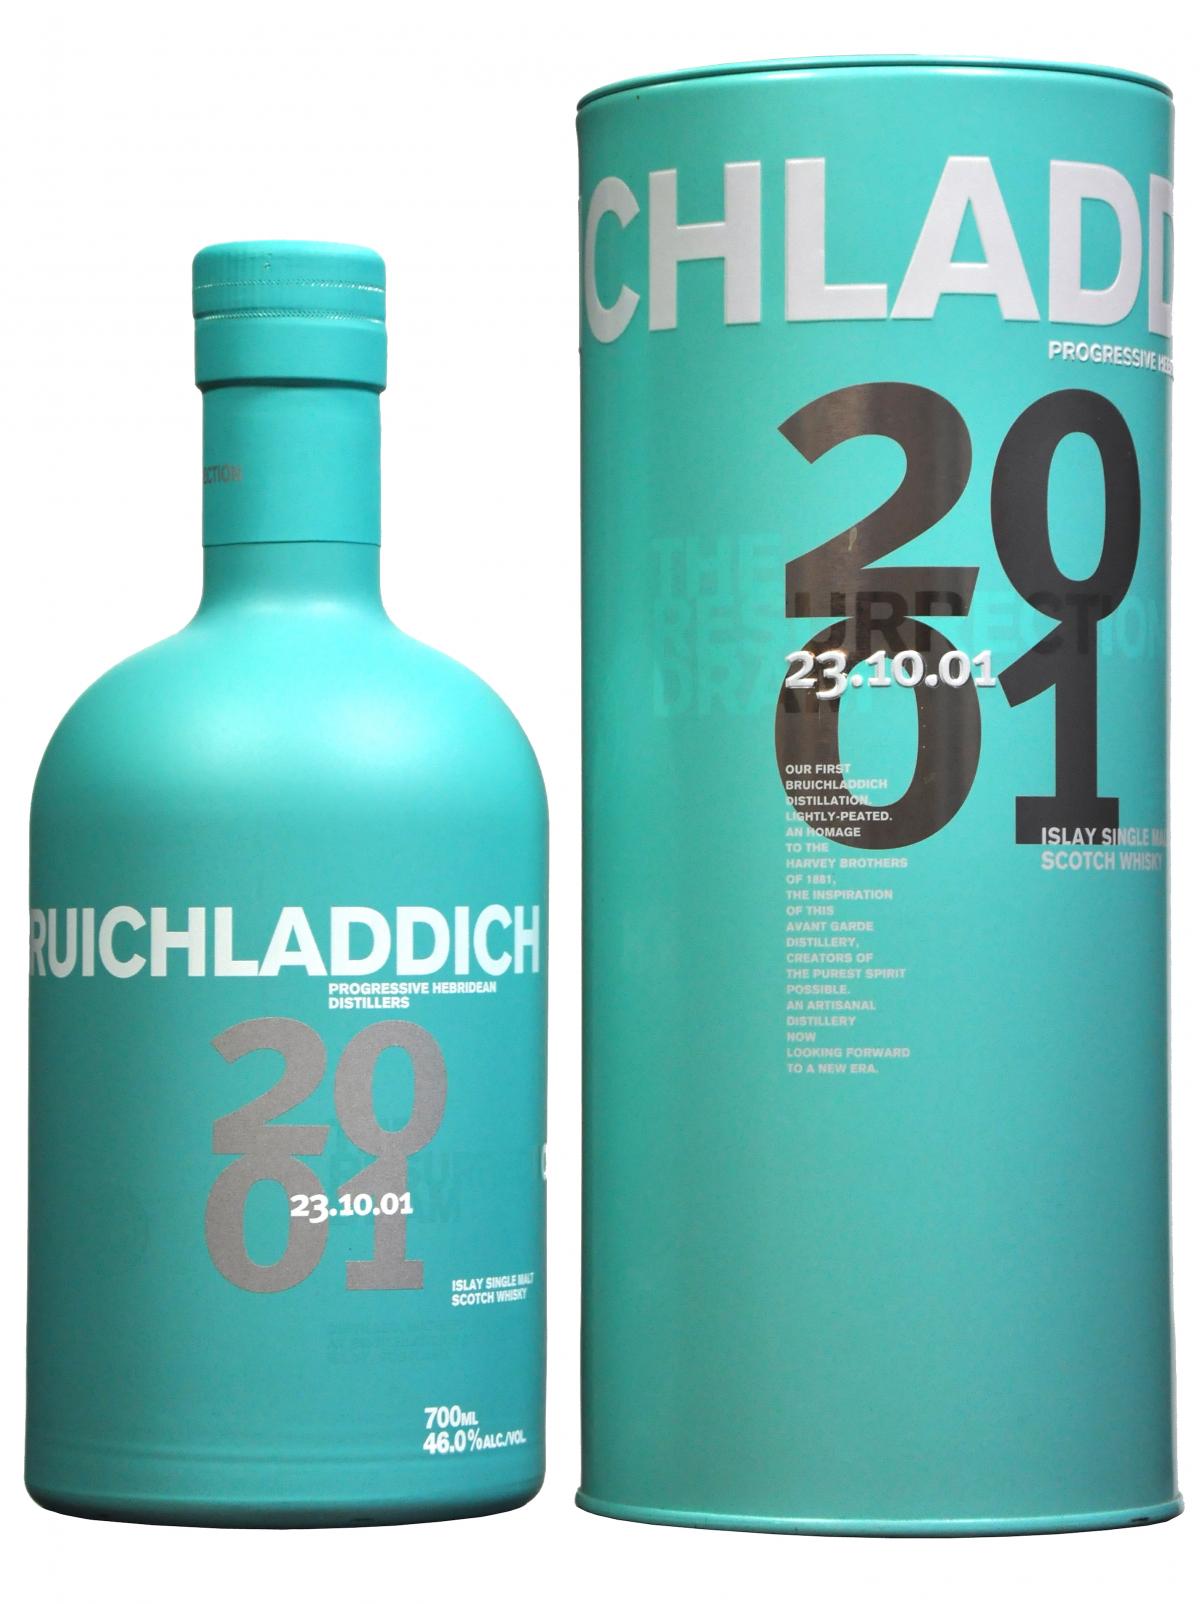 bruichladdich distilled 2001, islay single malt scotch whisky whiskey